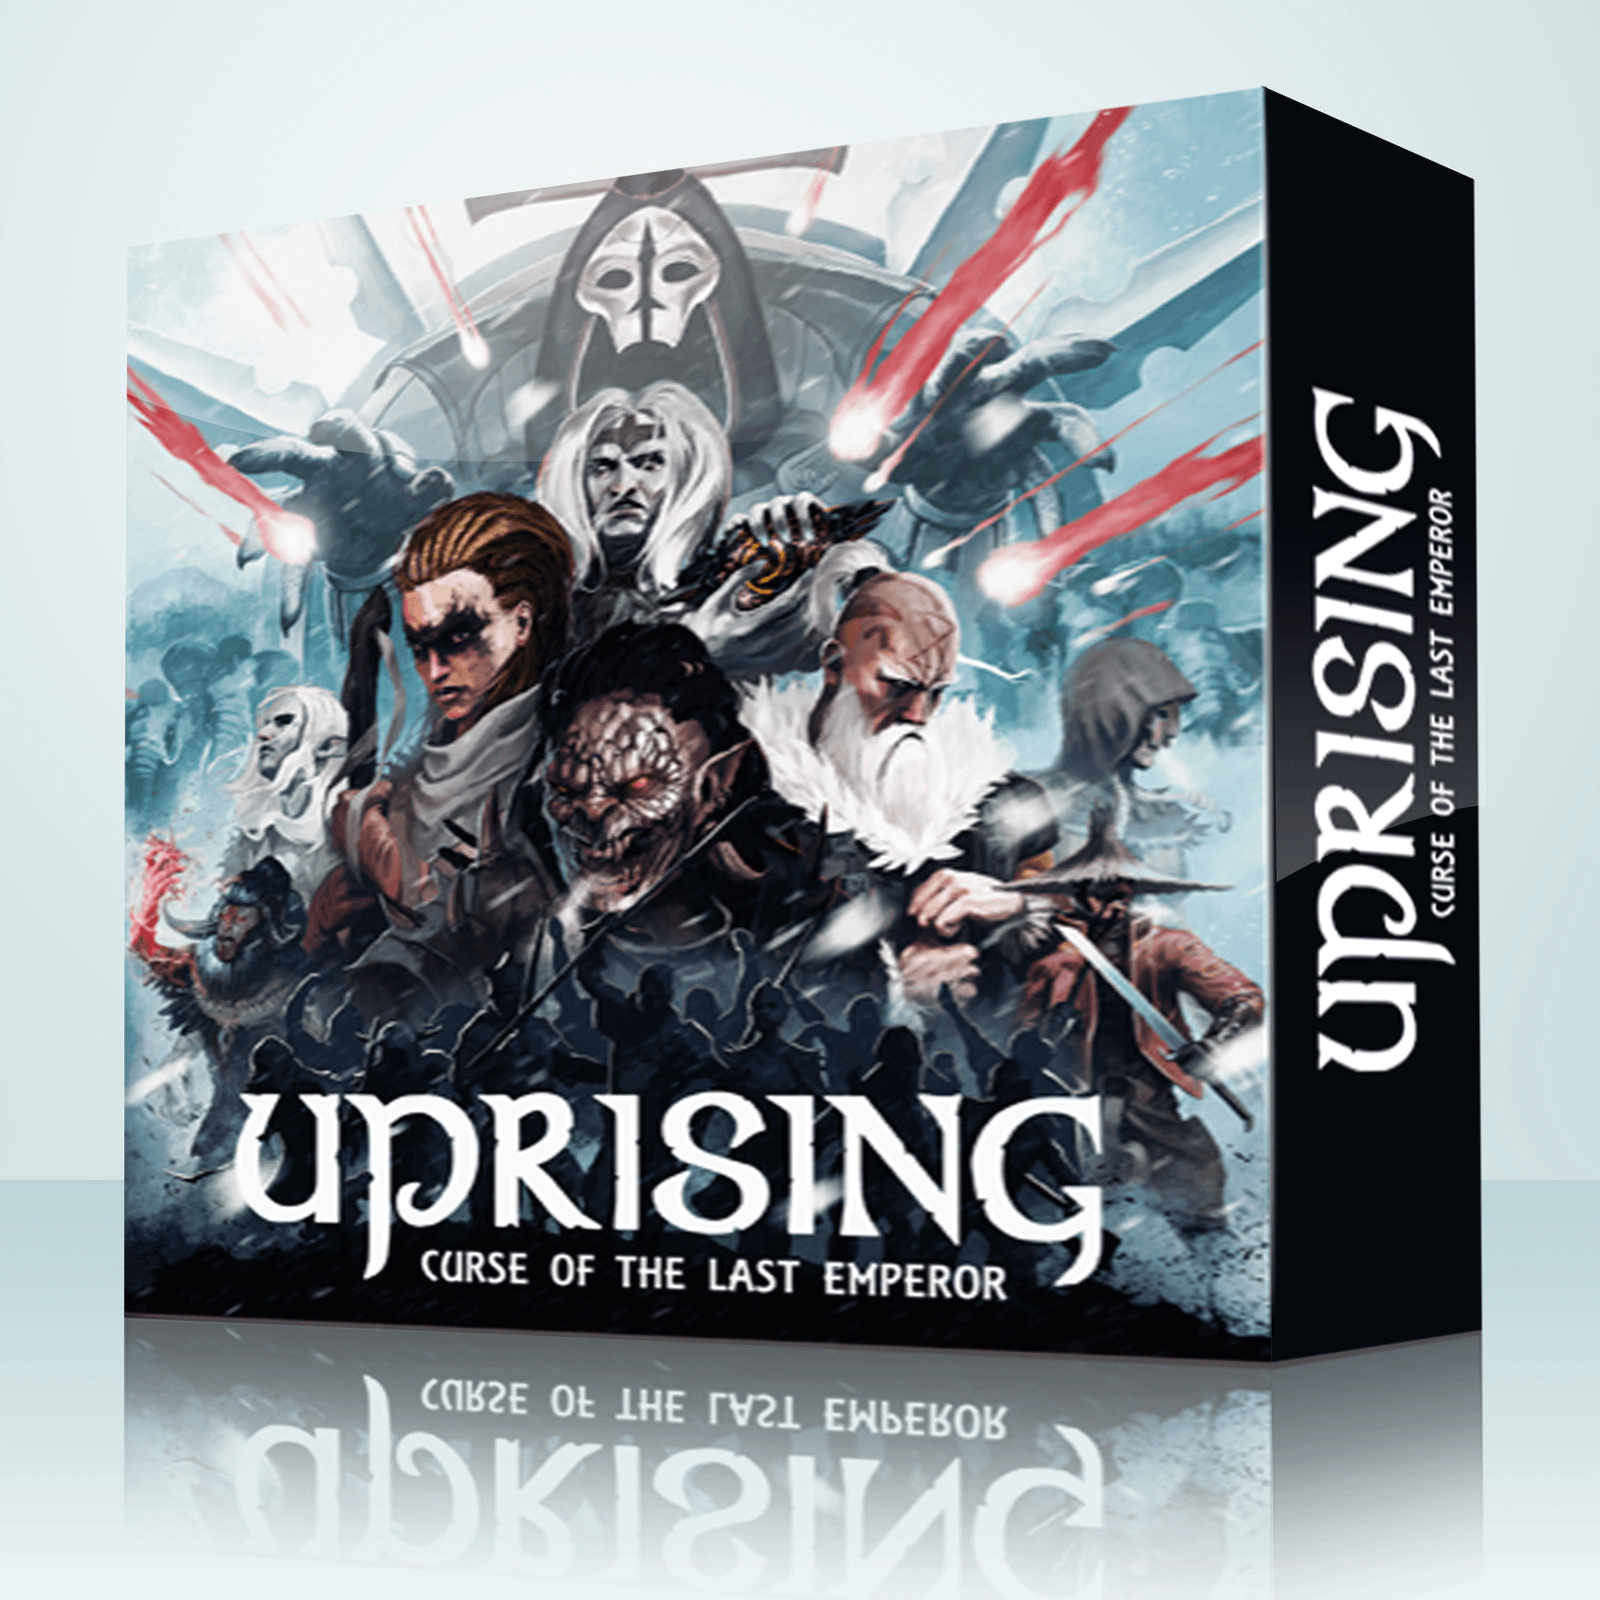 Uprising: Curse of the Last Emperor